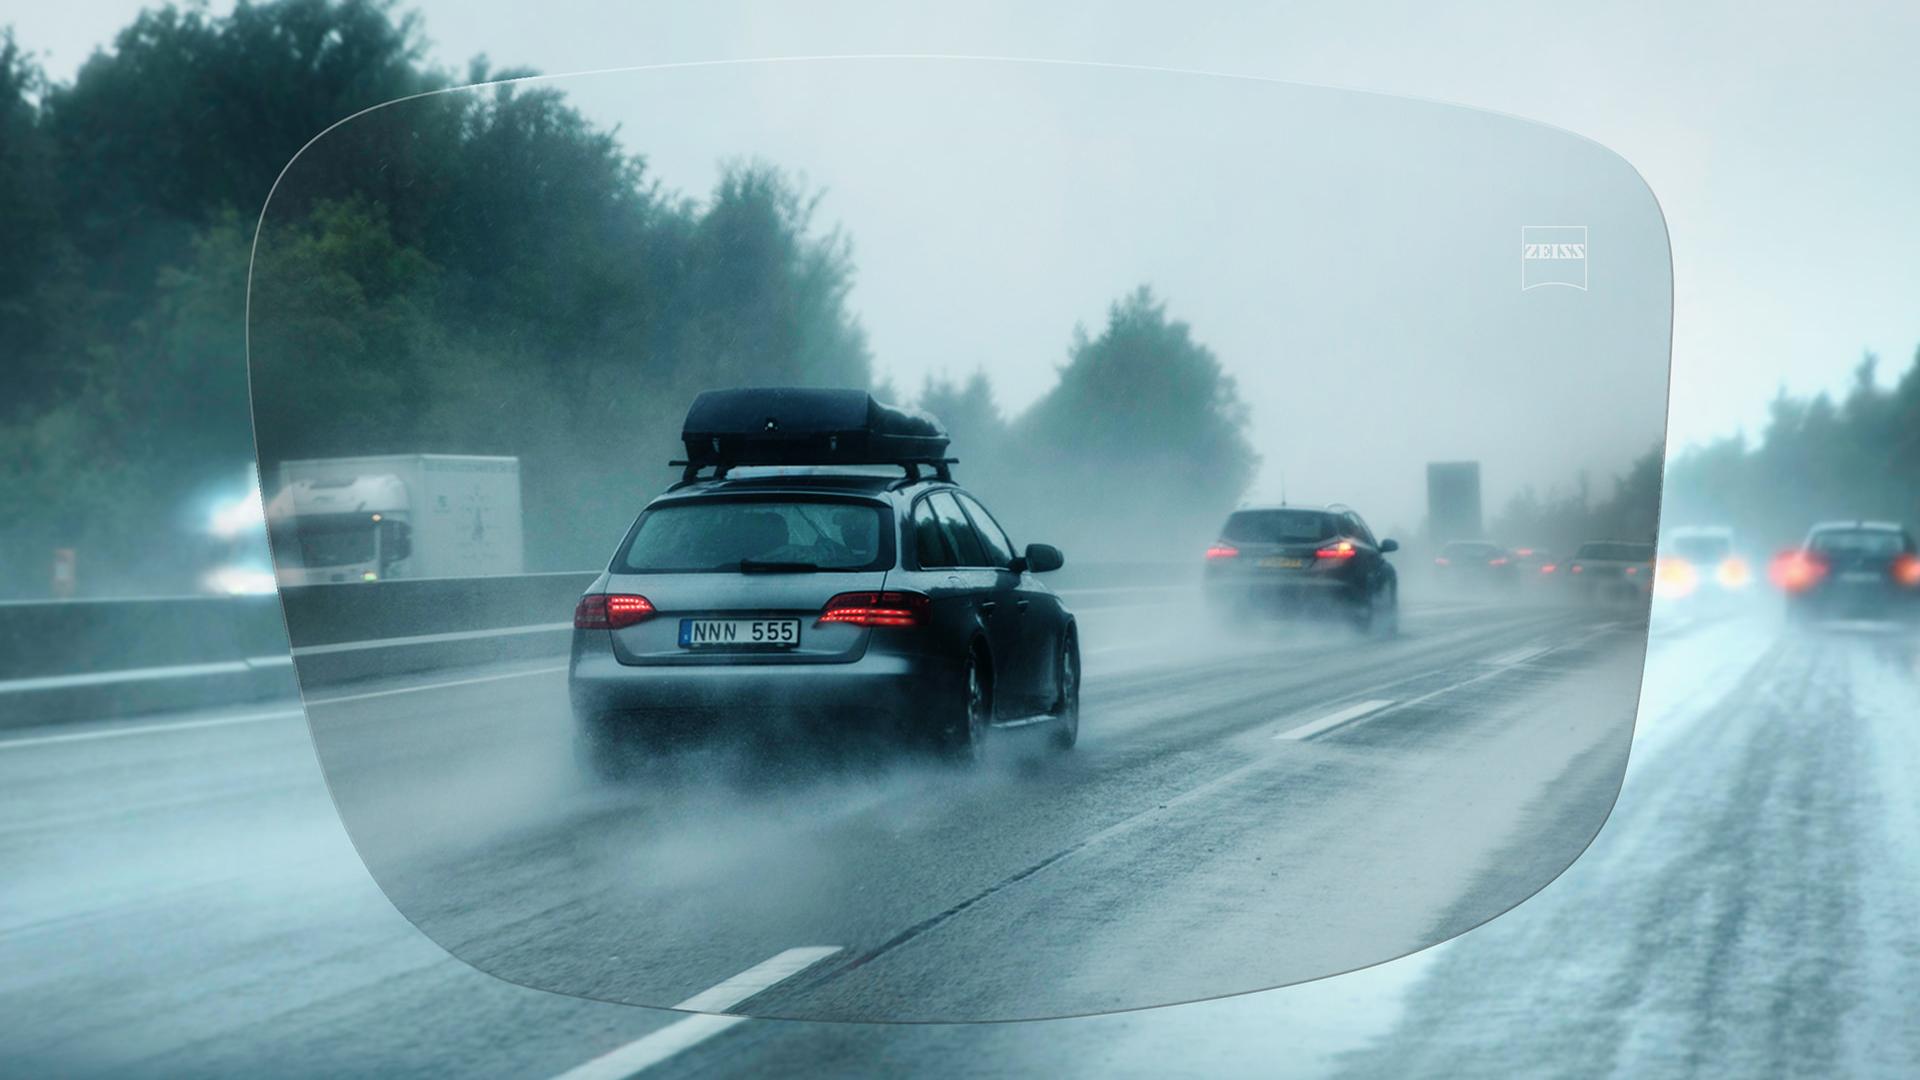 Yağmurlu bir günde otoyolda ZEISS DriveSafe Tek Odaklı Lens ile görüntüleyin 